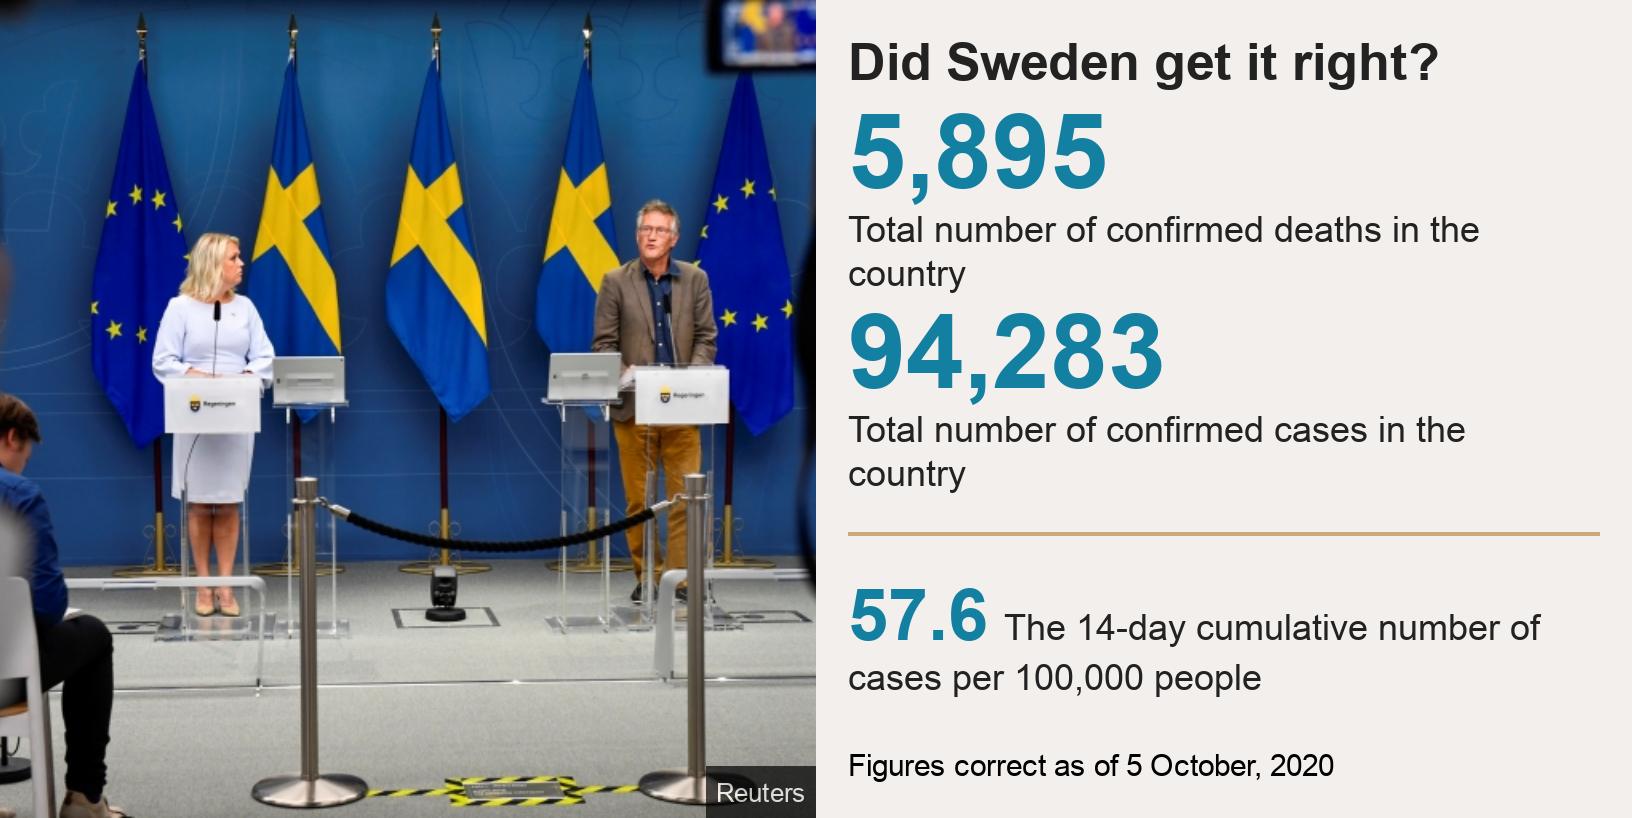 A Suécia acertou?  [5.895 Número total de mortes confirmadas no país], [94.283 Número total de casos confirmados no país] [57,6 O número cumulativo de 14 dias de casos por 100.000 pessoas], Fonte: Dados corretos em 5 de outubro de 2020, Imagem : Funcionários na Suécia